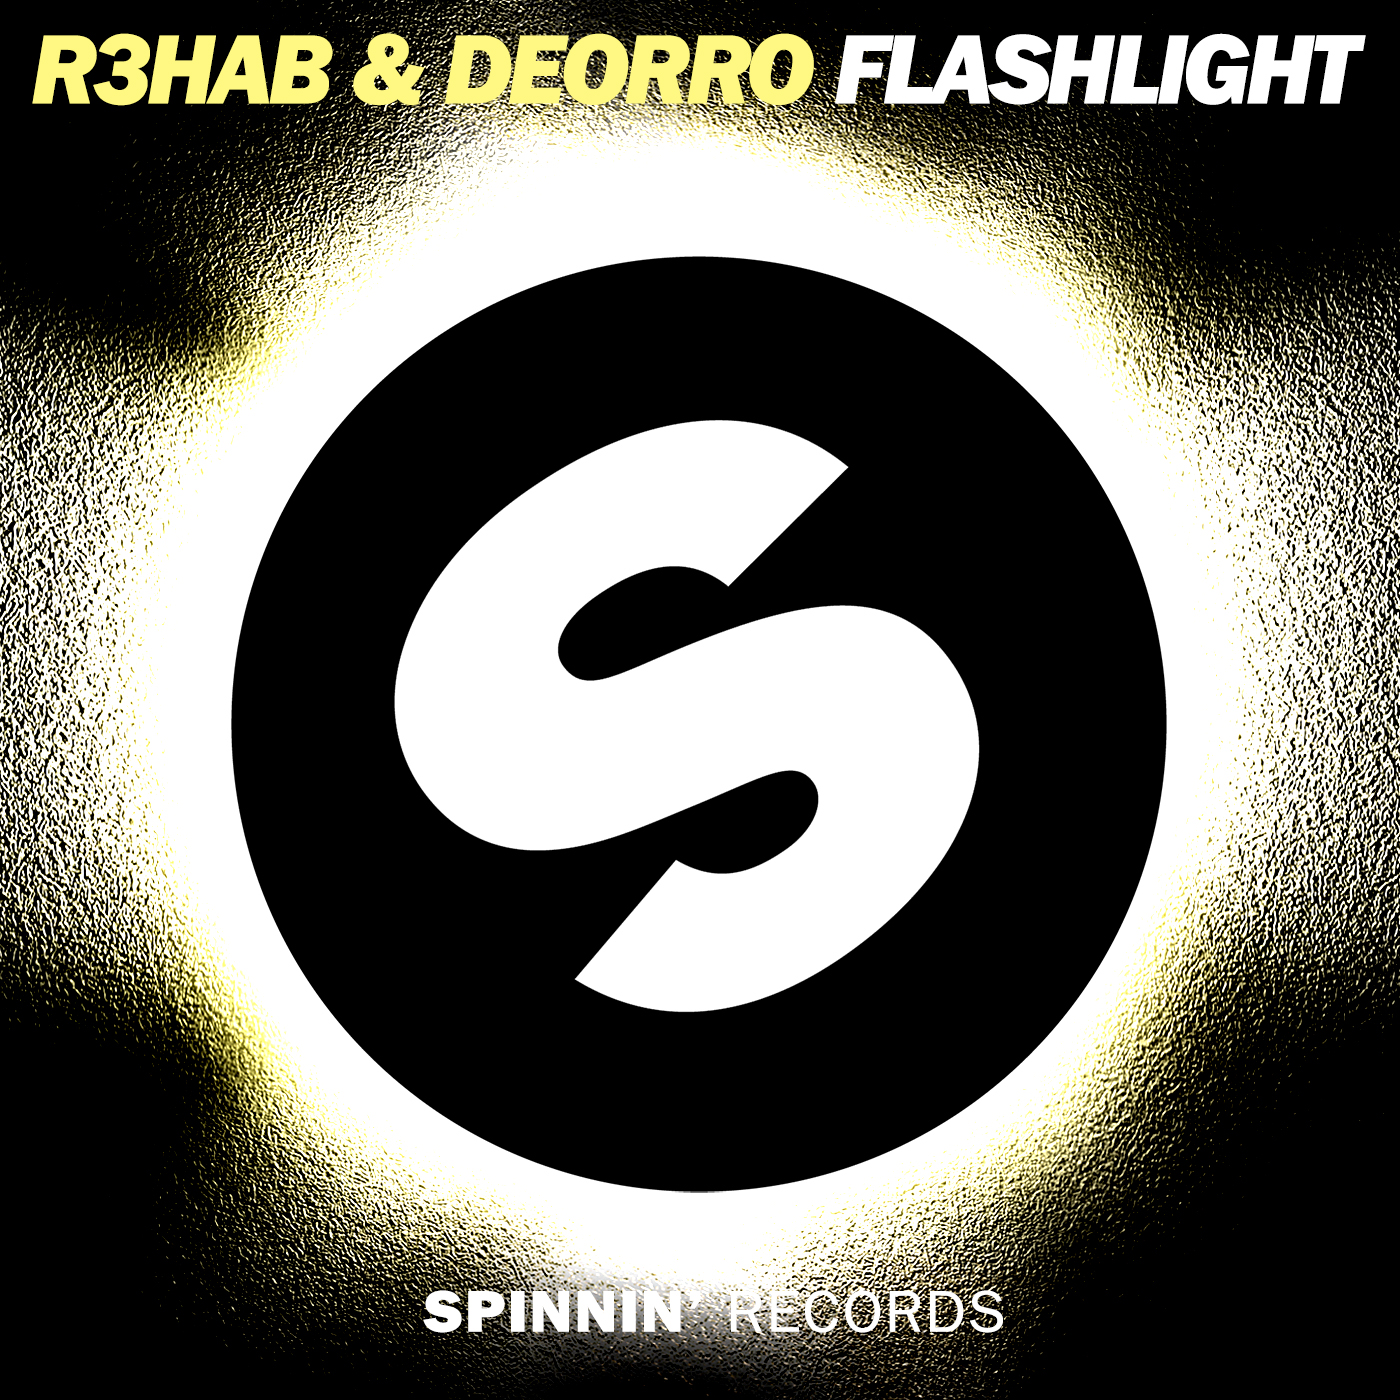 R3hab & Deorro - Flashlight (Darkland Mashup)